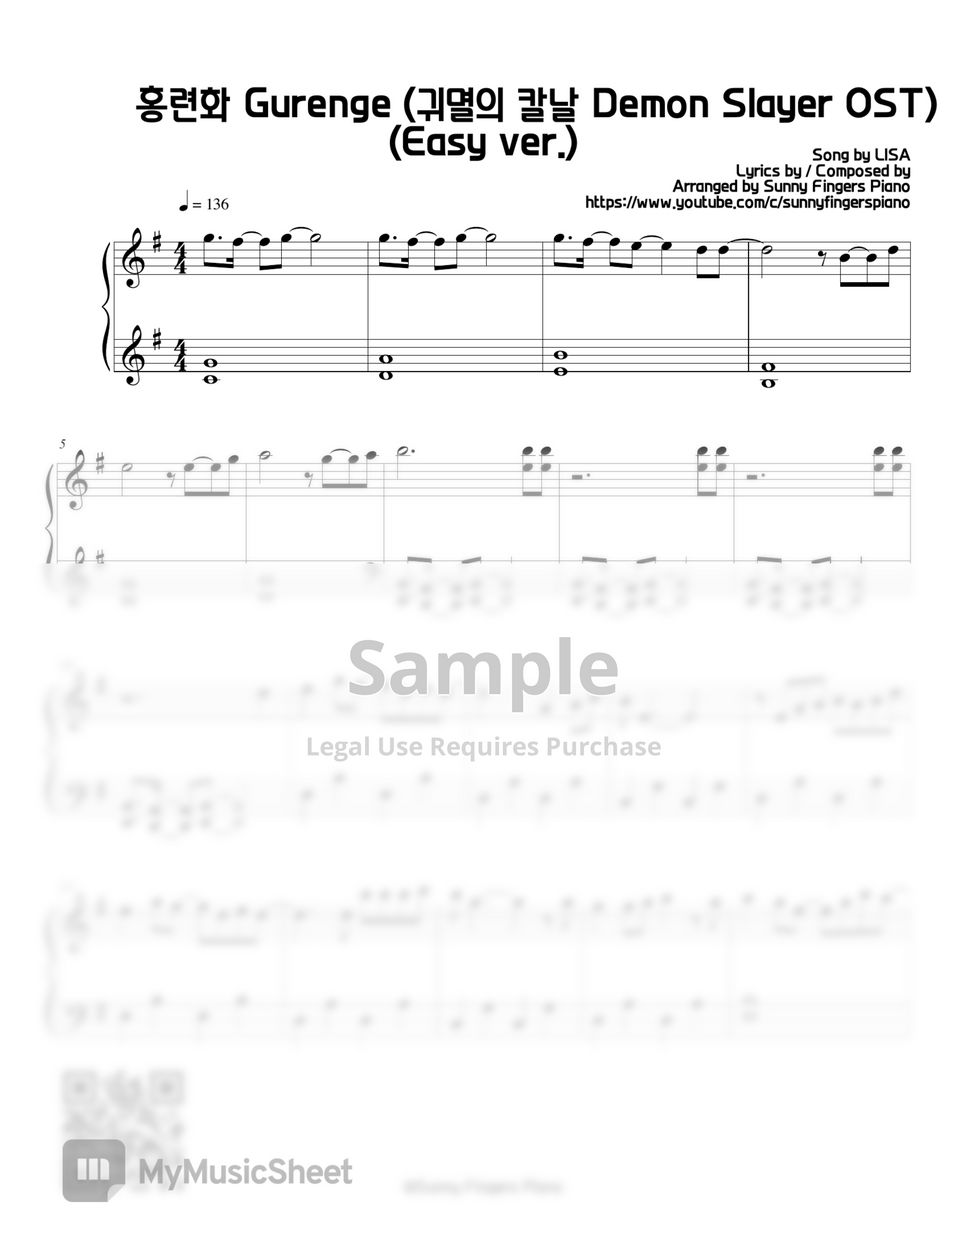 LISA - Gurenge  紅蓮華 -  Demon Slayer 鬼滅の刃Opening Theme (Easy) by Sunny Fingers Piano